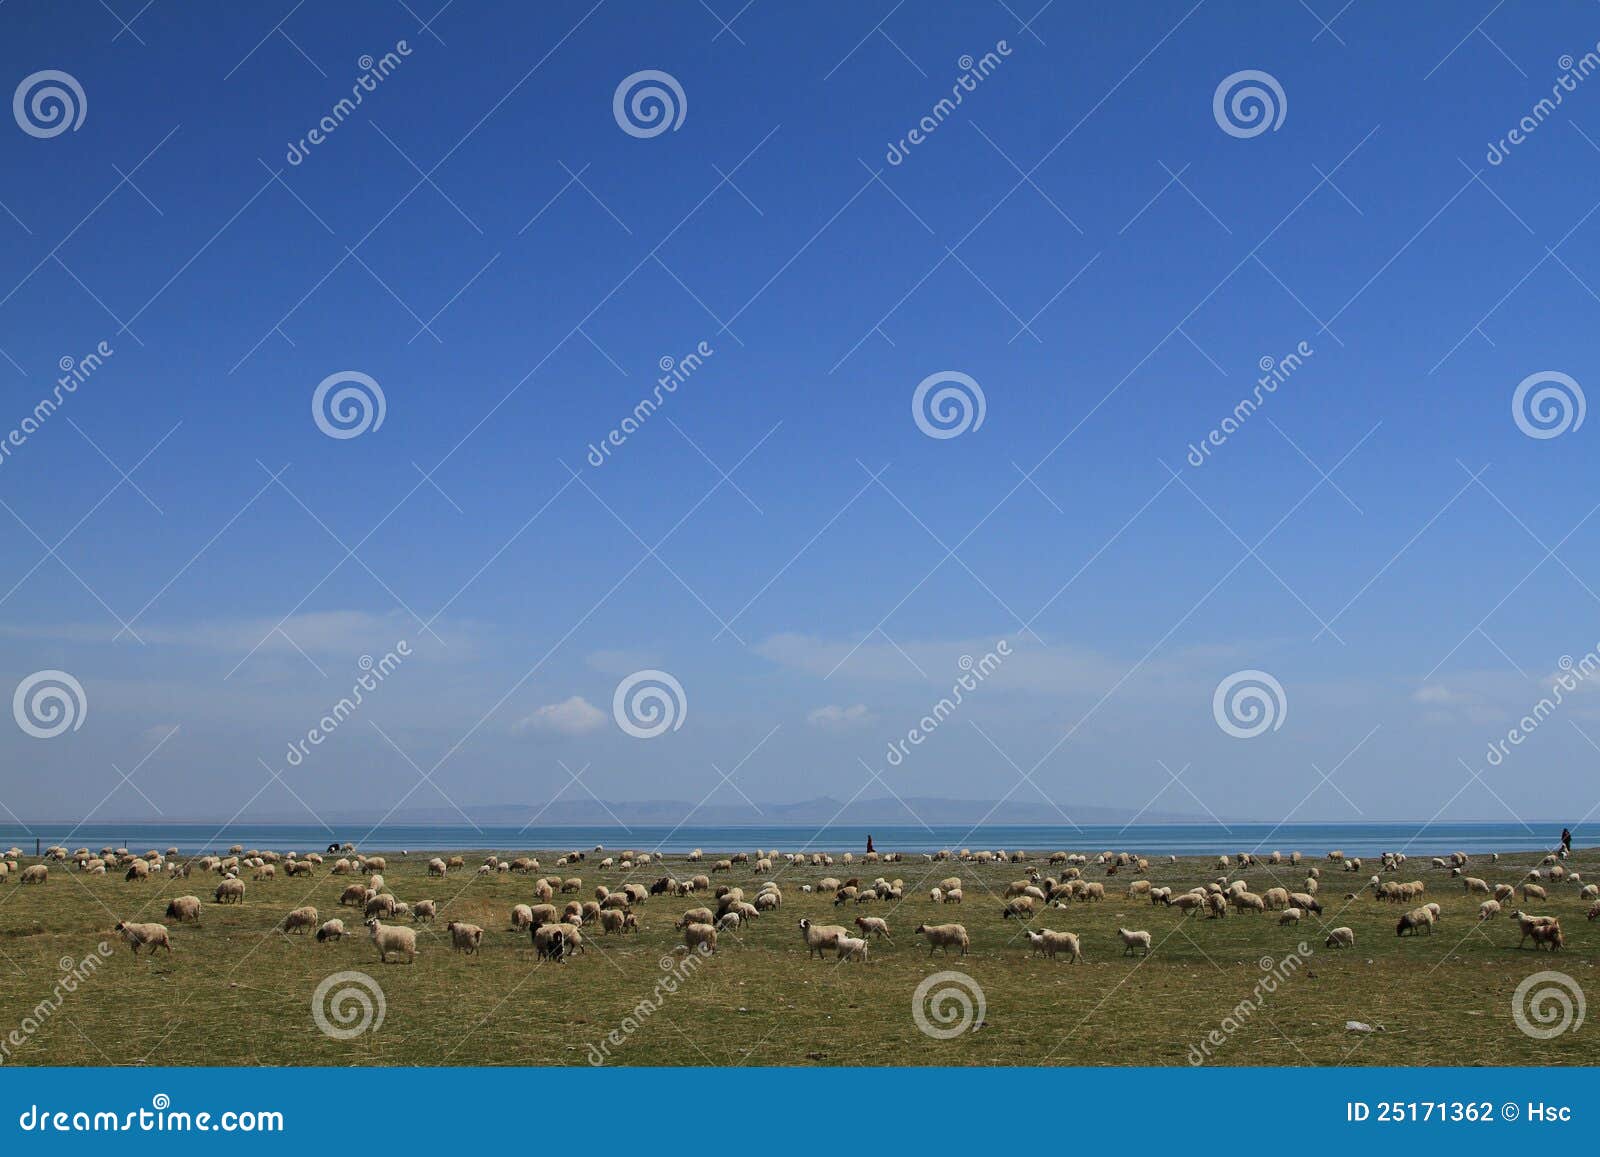 Schafe in der Wiese neben Qinghai-See.